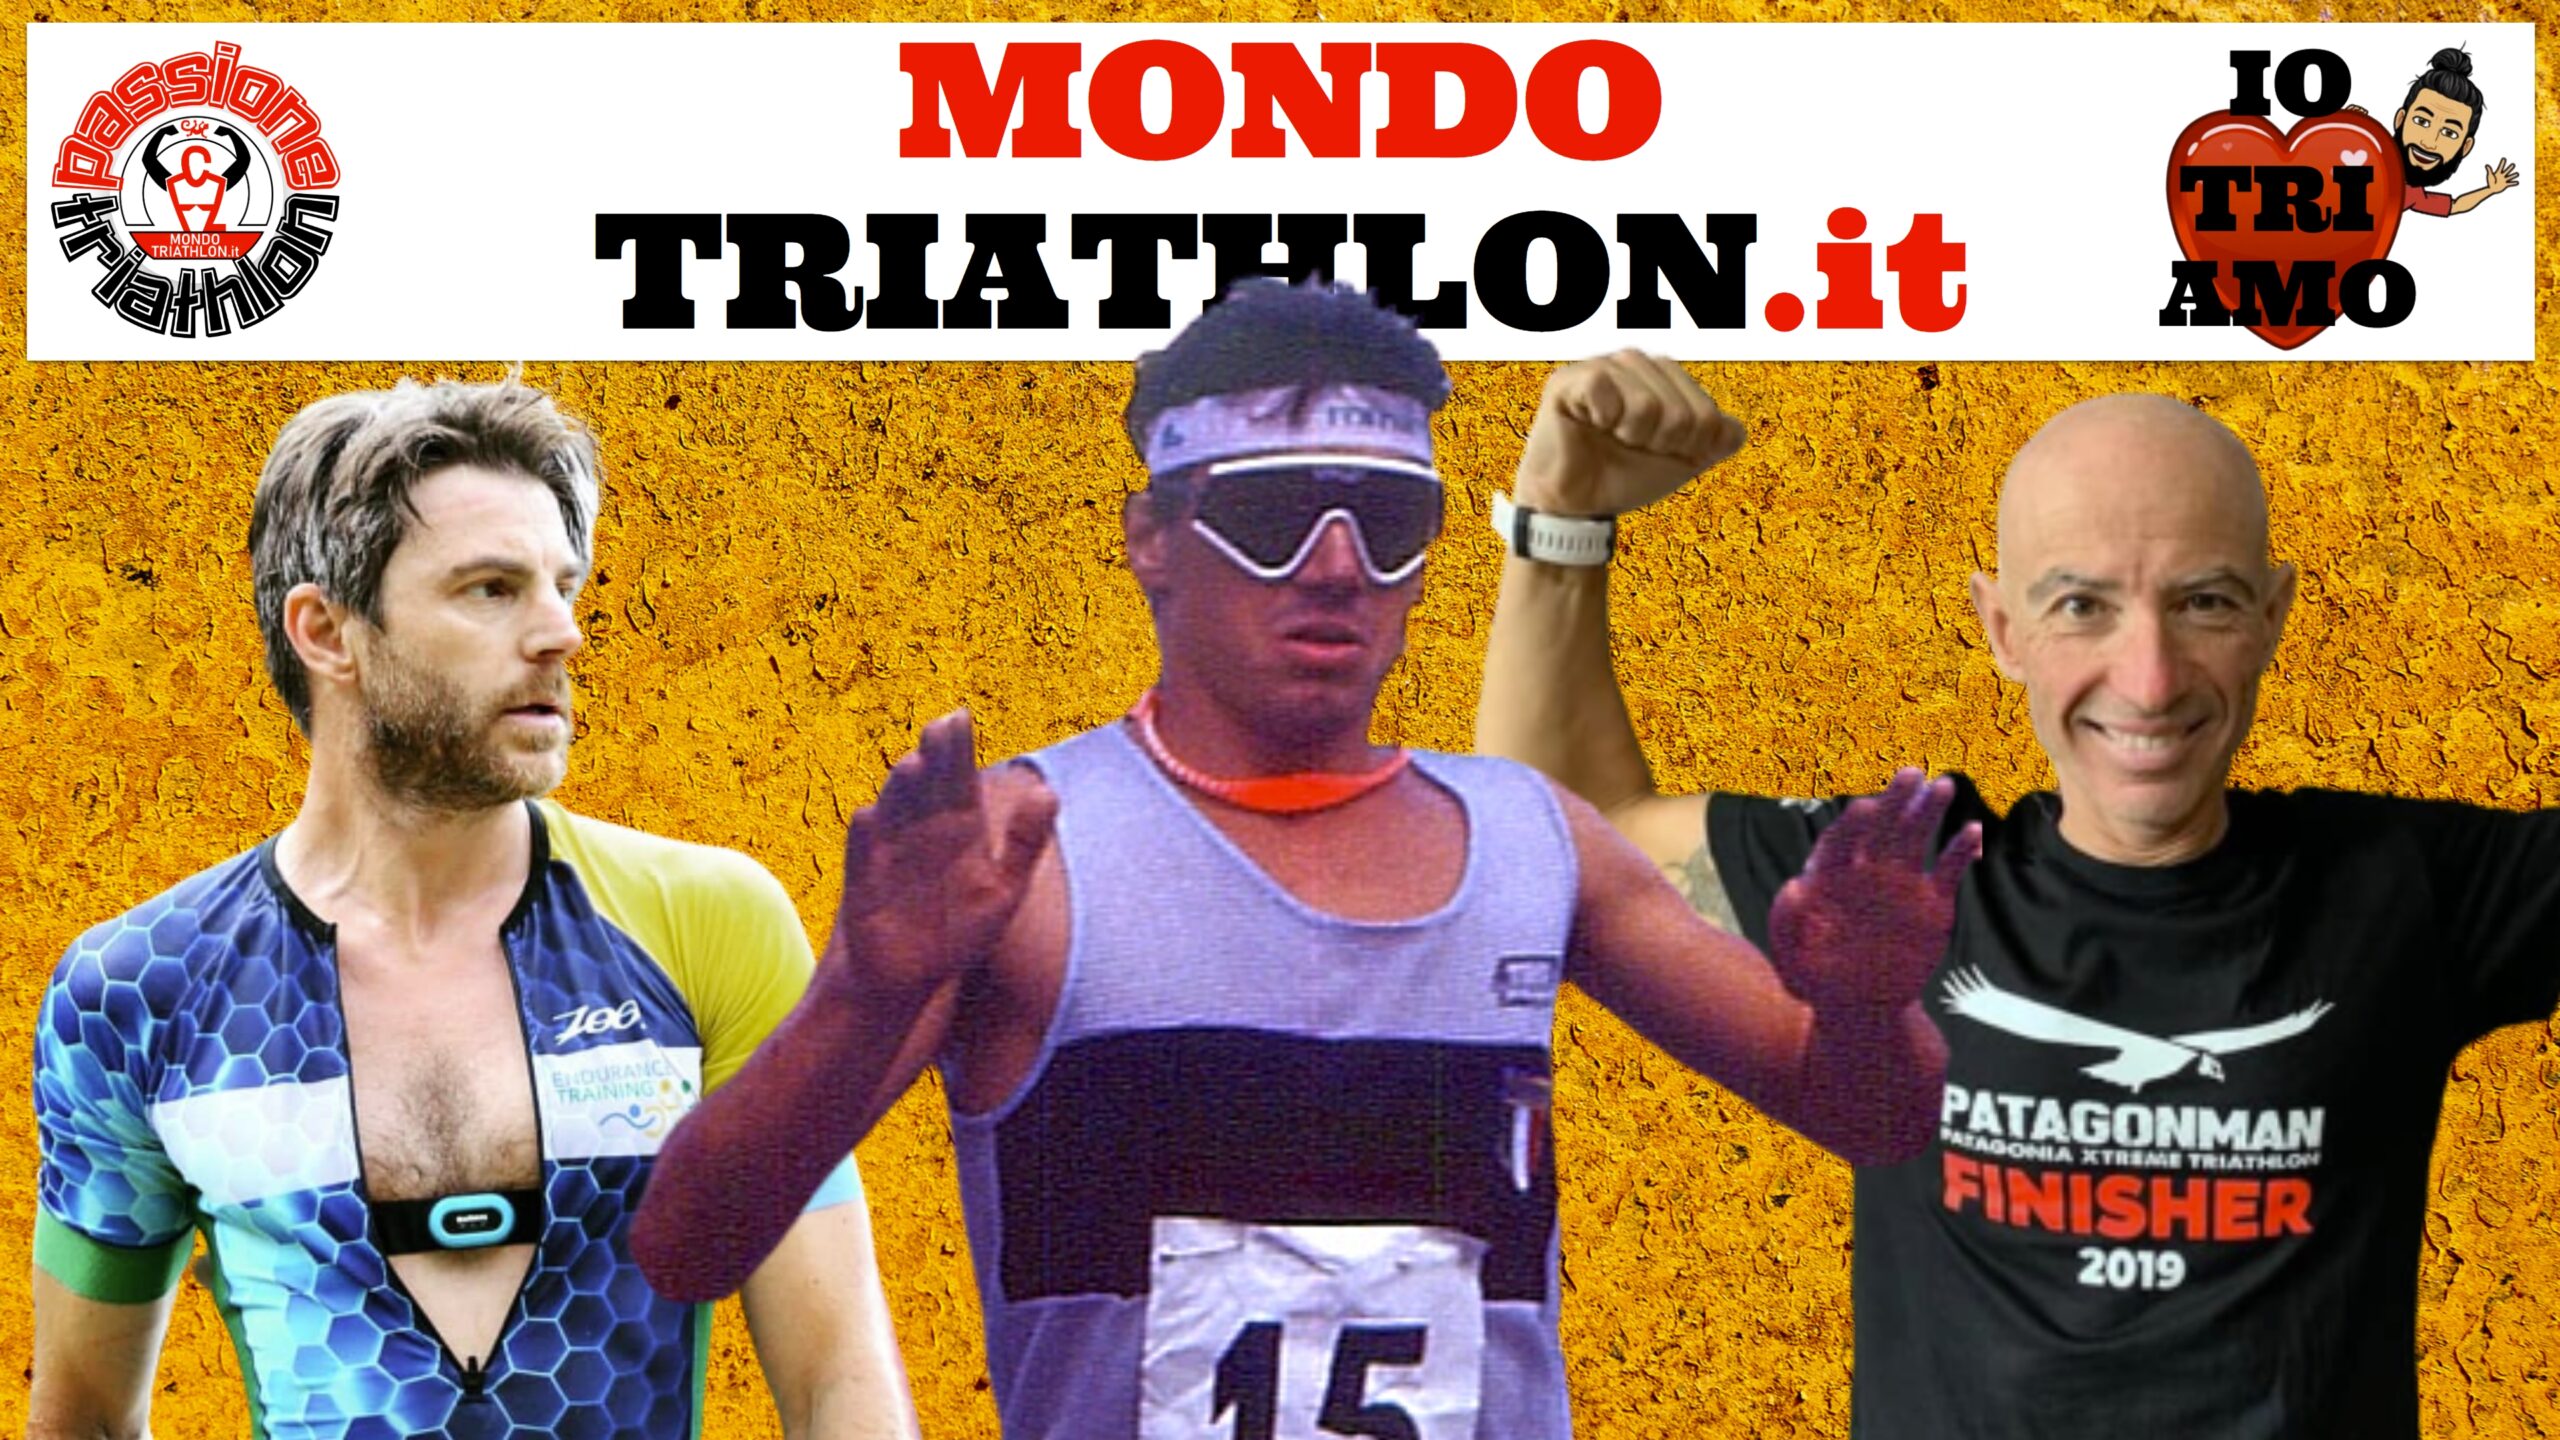 Passione Triathlon, la copertina con i protagonisti dal 20 al 24 luglio 2020: Danilo Palmucci, Emanuele Iannarilli, Daniele Castrorao